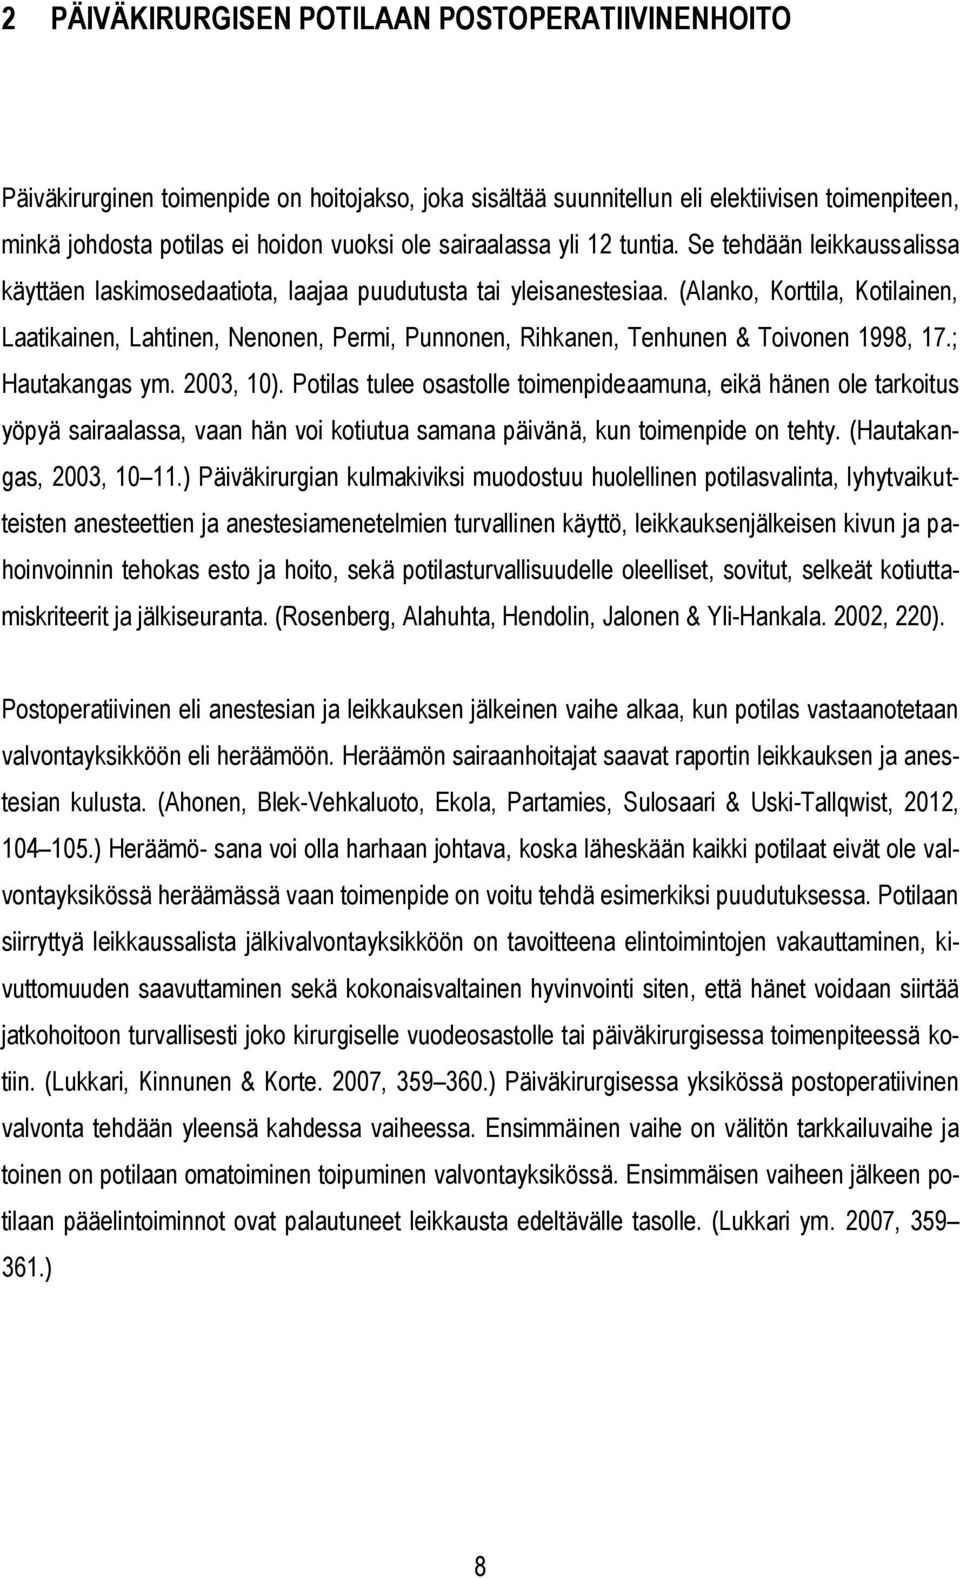 (Alanko, Korttila, Kotilainen, Laatikainen, Lahtinen, Nenonen, Permi, Punnonen, Rihkanen, Tenhunen & Toivonen 1998, 17.; Hautakangas ym. 2003, 10).